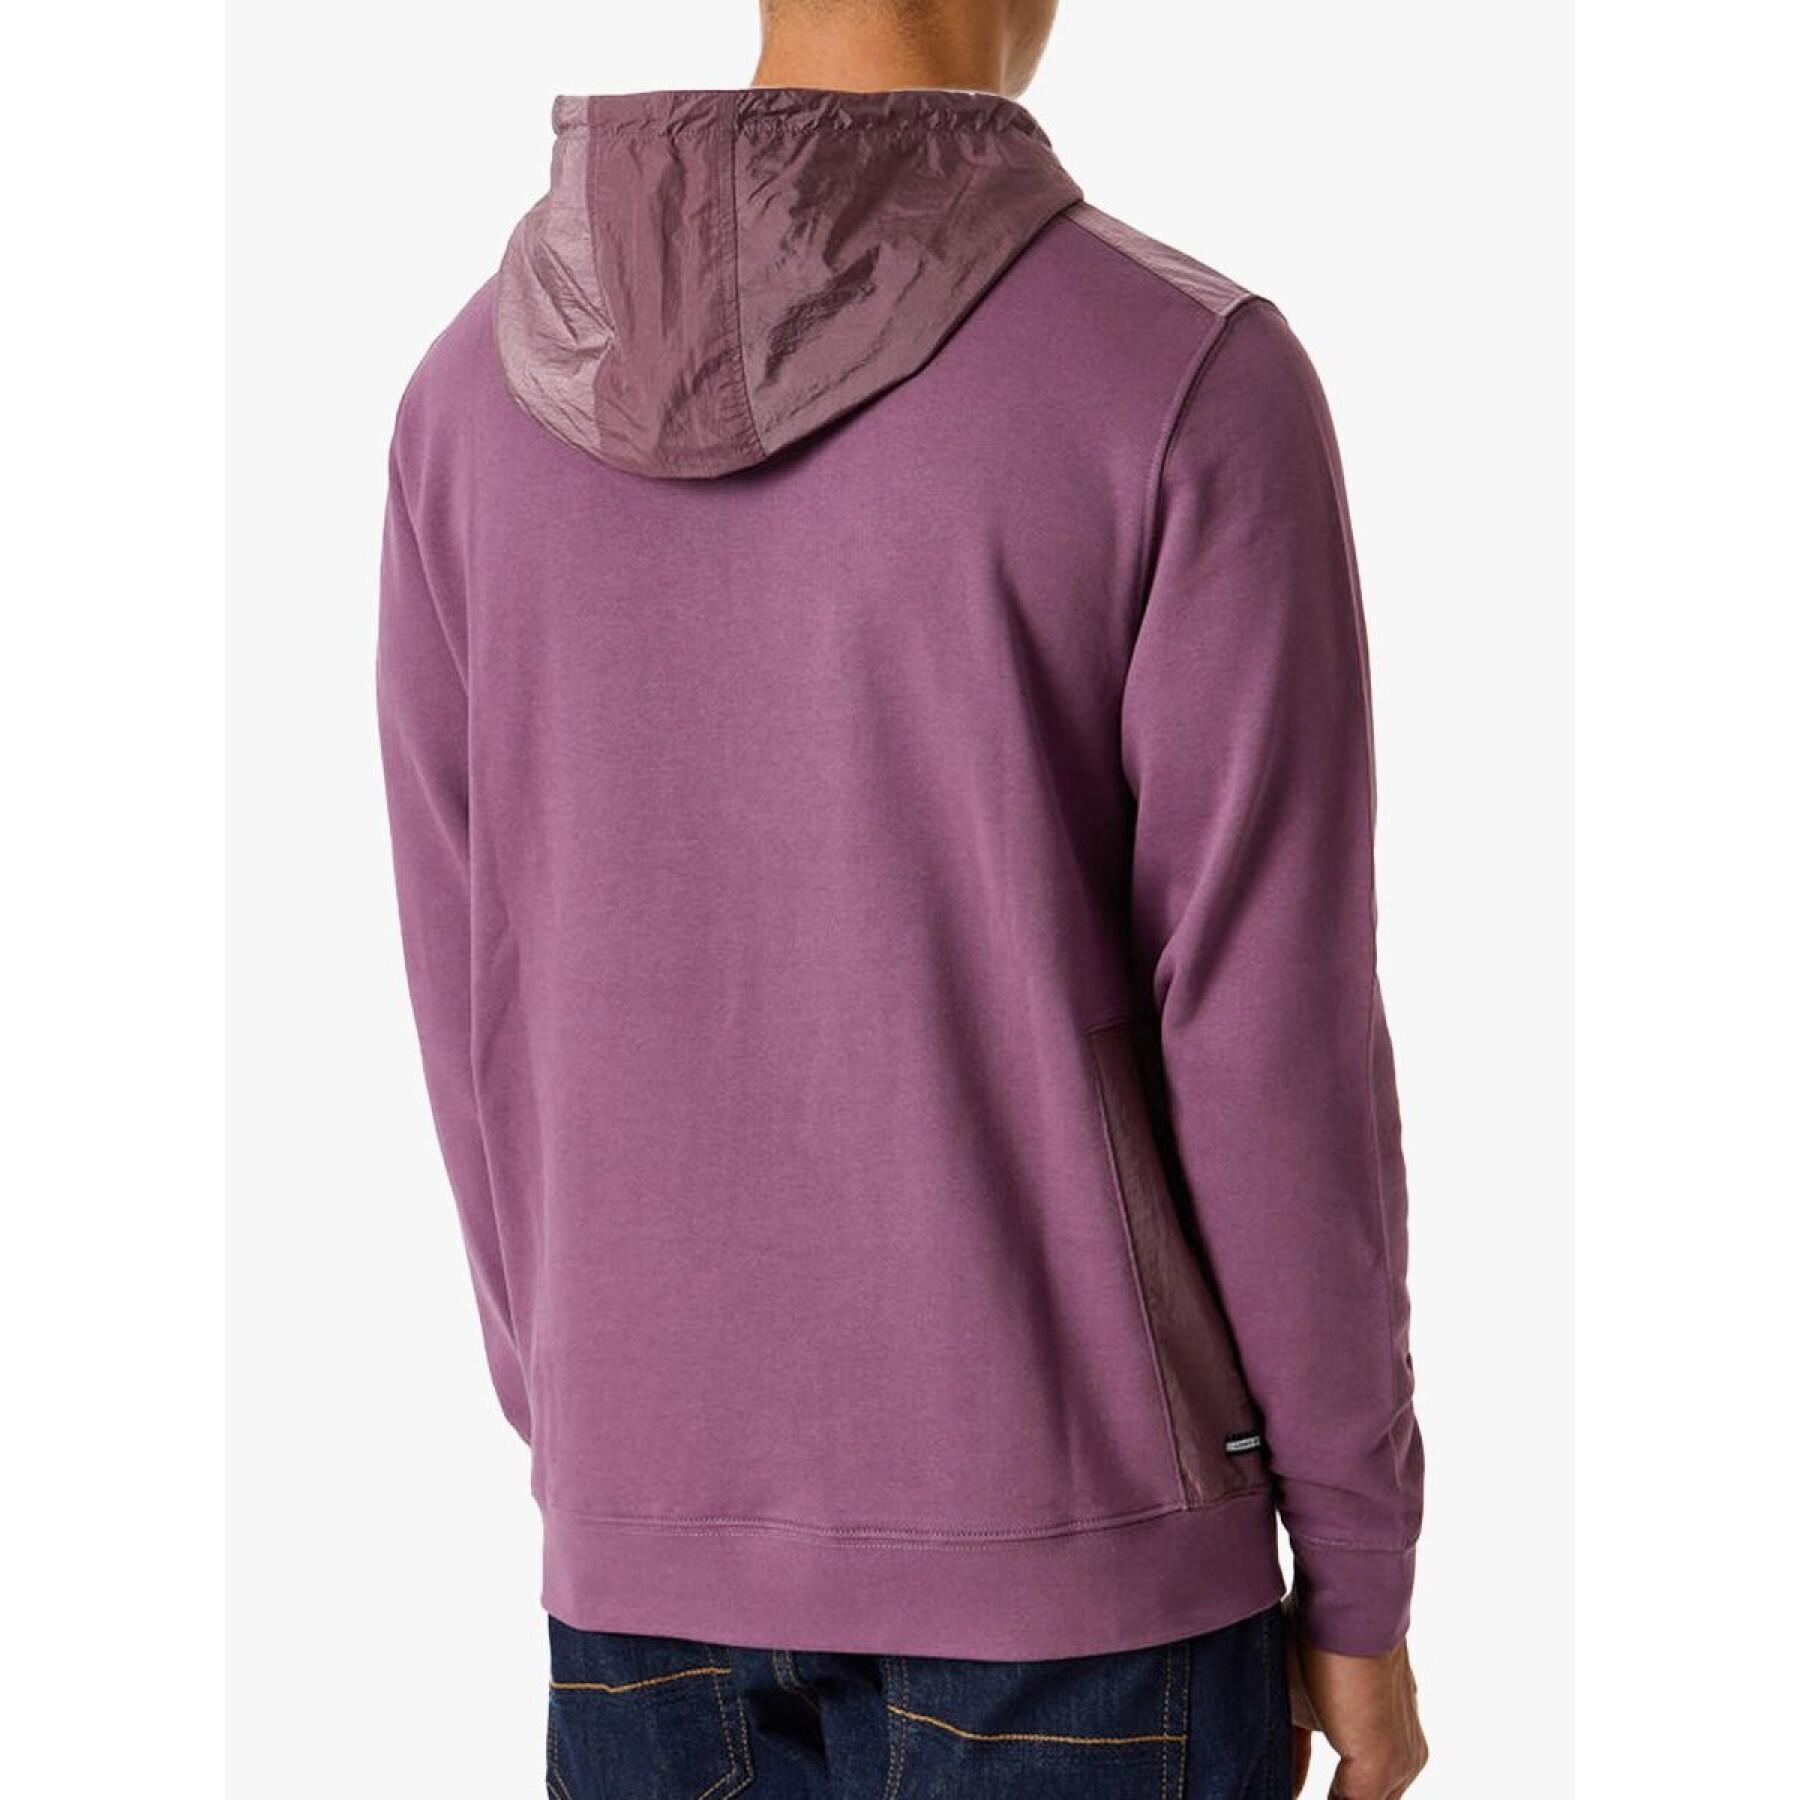 Hooded sweatshirt Weekend Offender El caminito